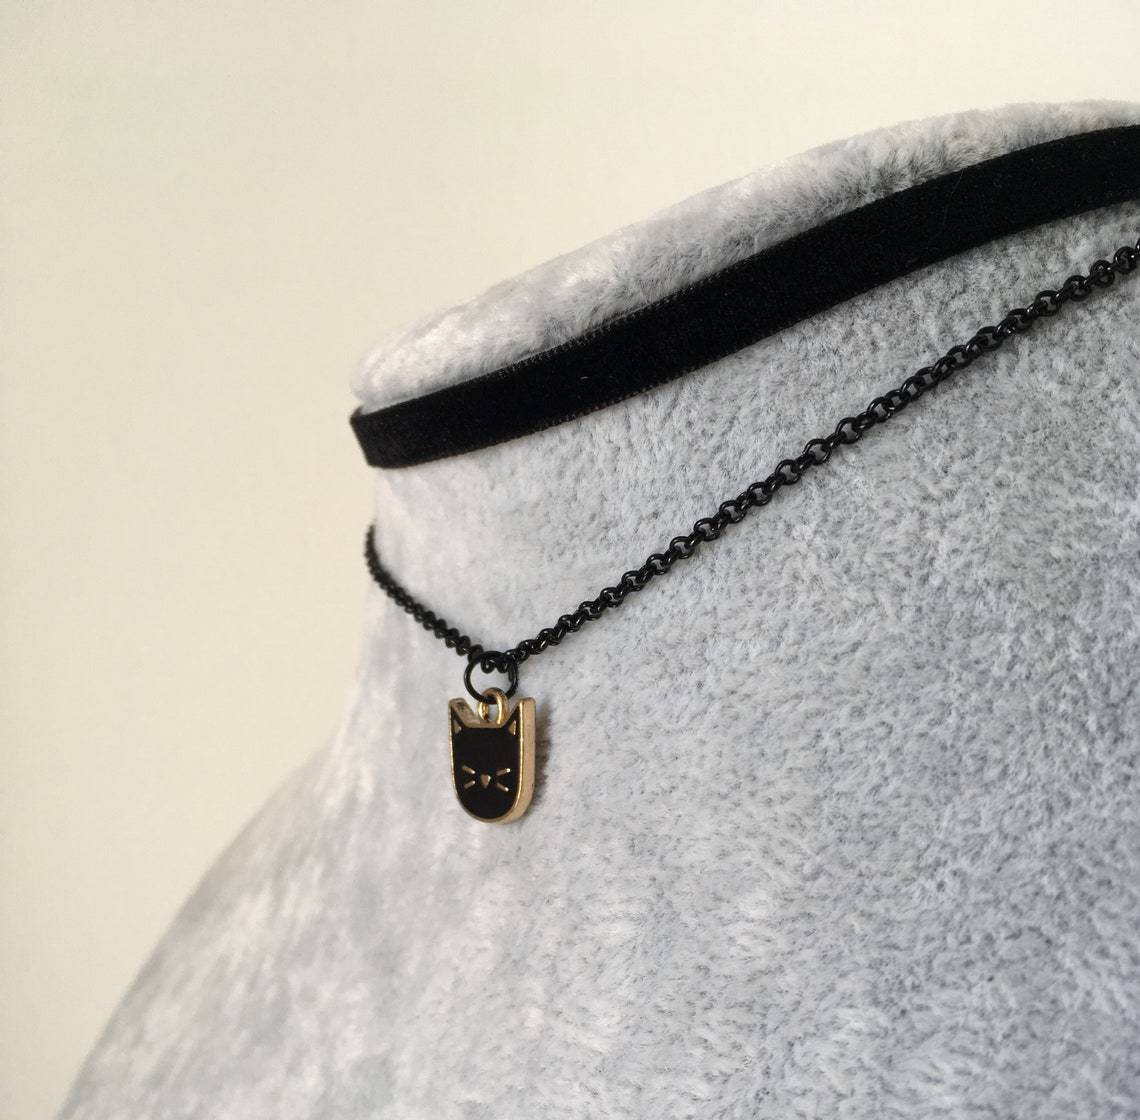 Black Cat Necklace Charm - Cat necklace